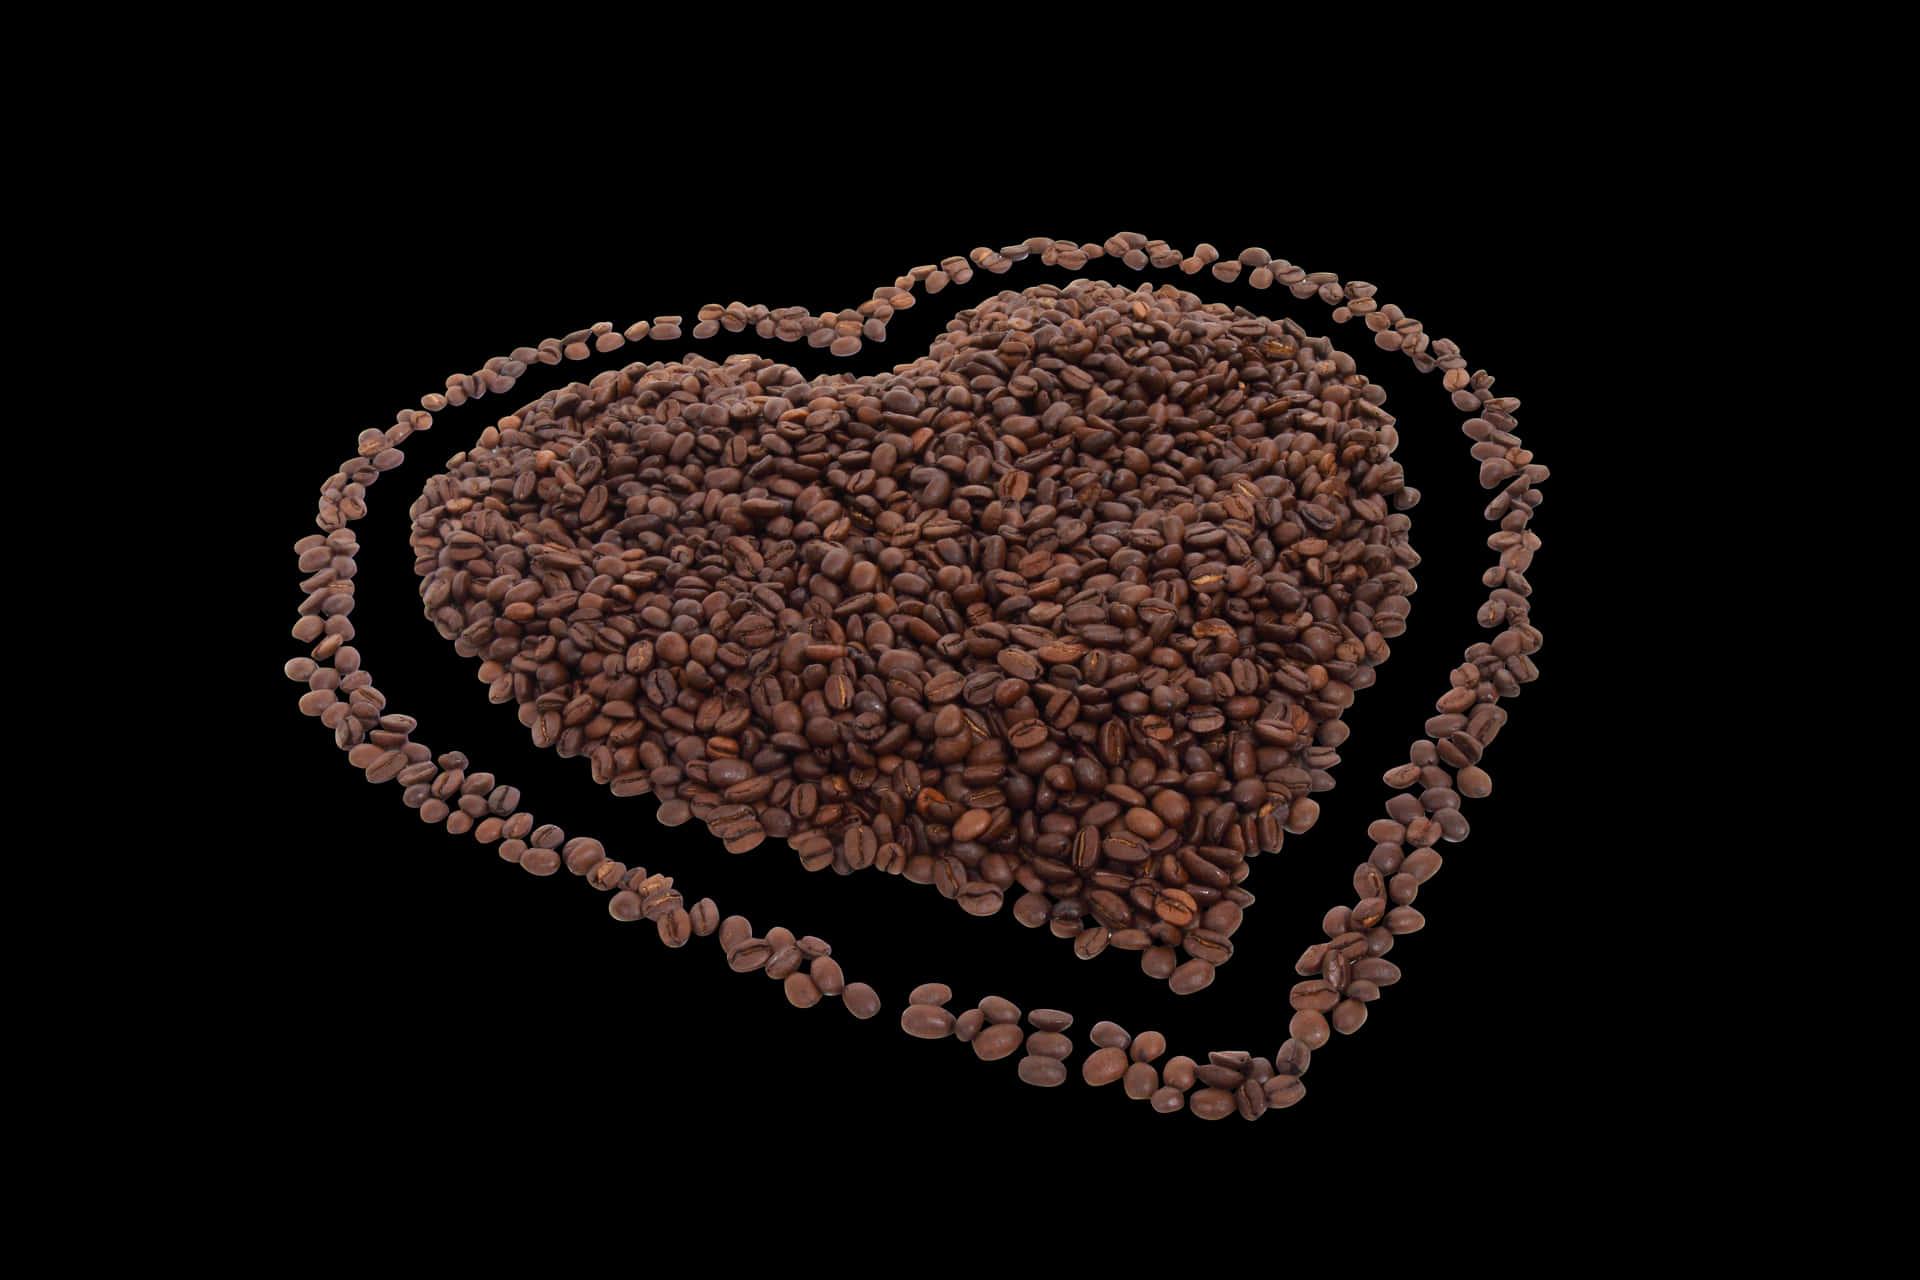 Coffee Bean Heart Art PNG